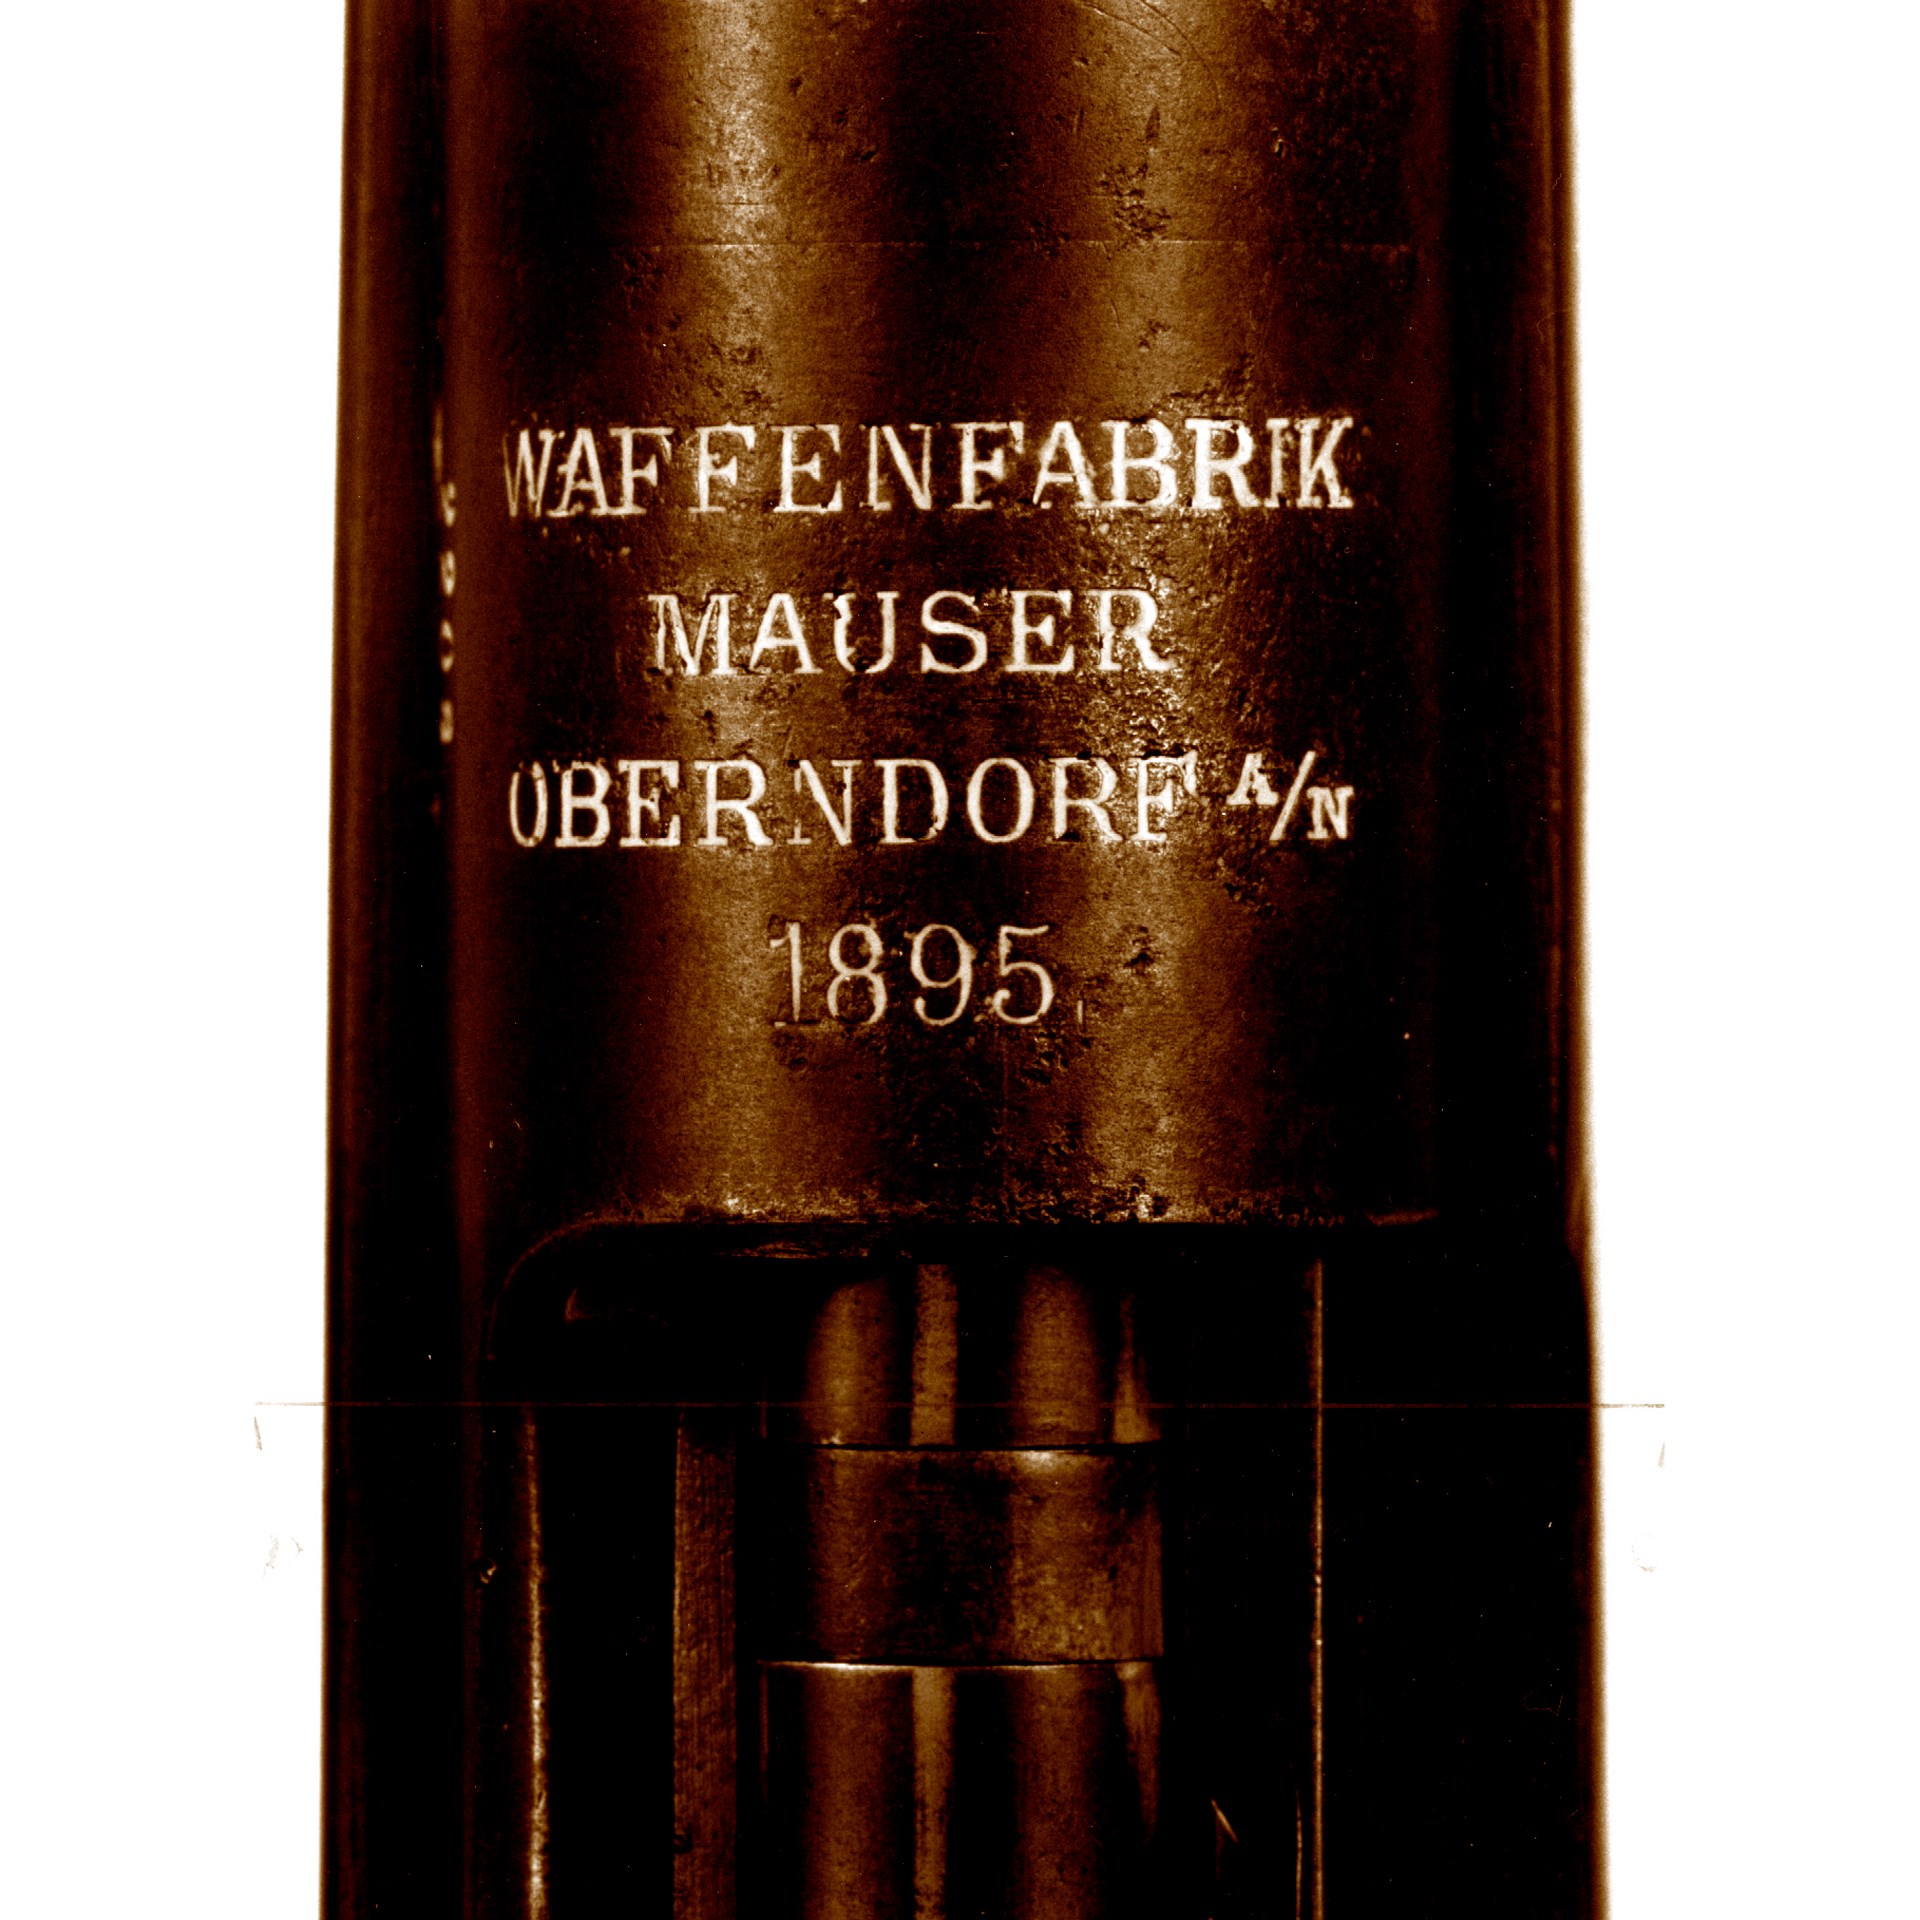 Waffenfabrik mauser oberndorf 1895 stamping on steel receiver